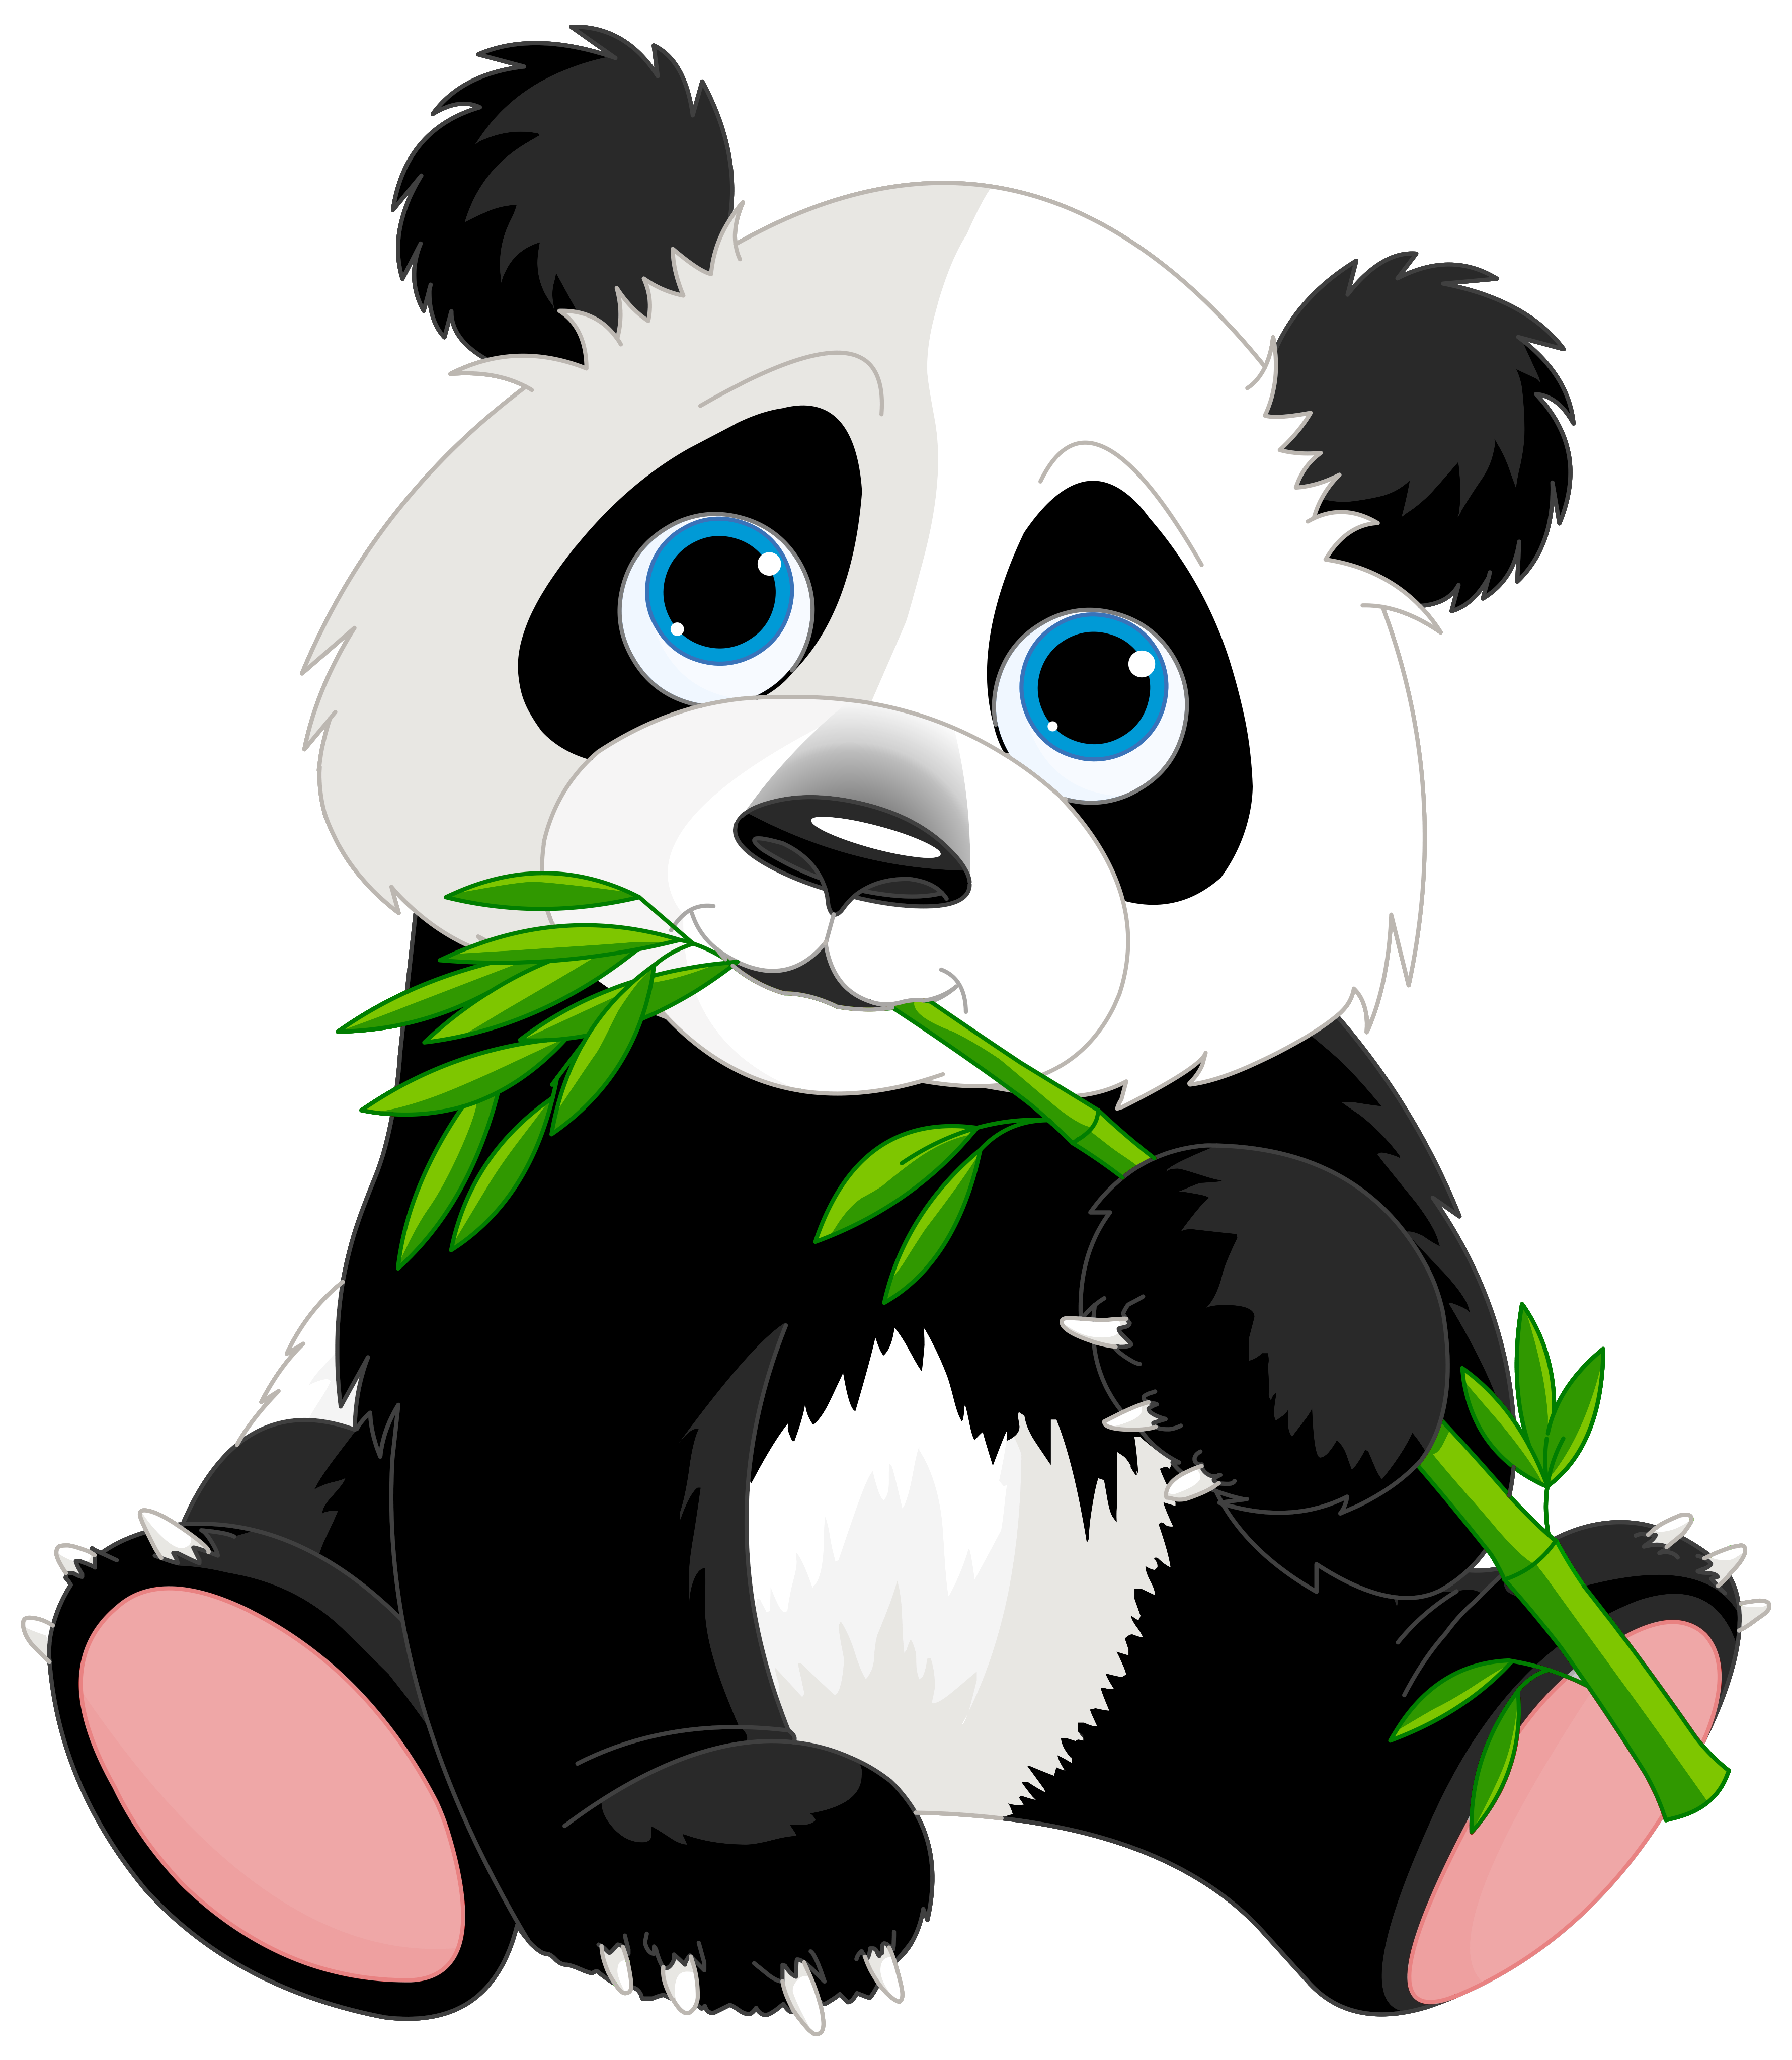 Cute panda cartoon image. Clipart rock animated